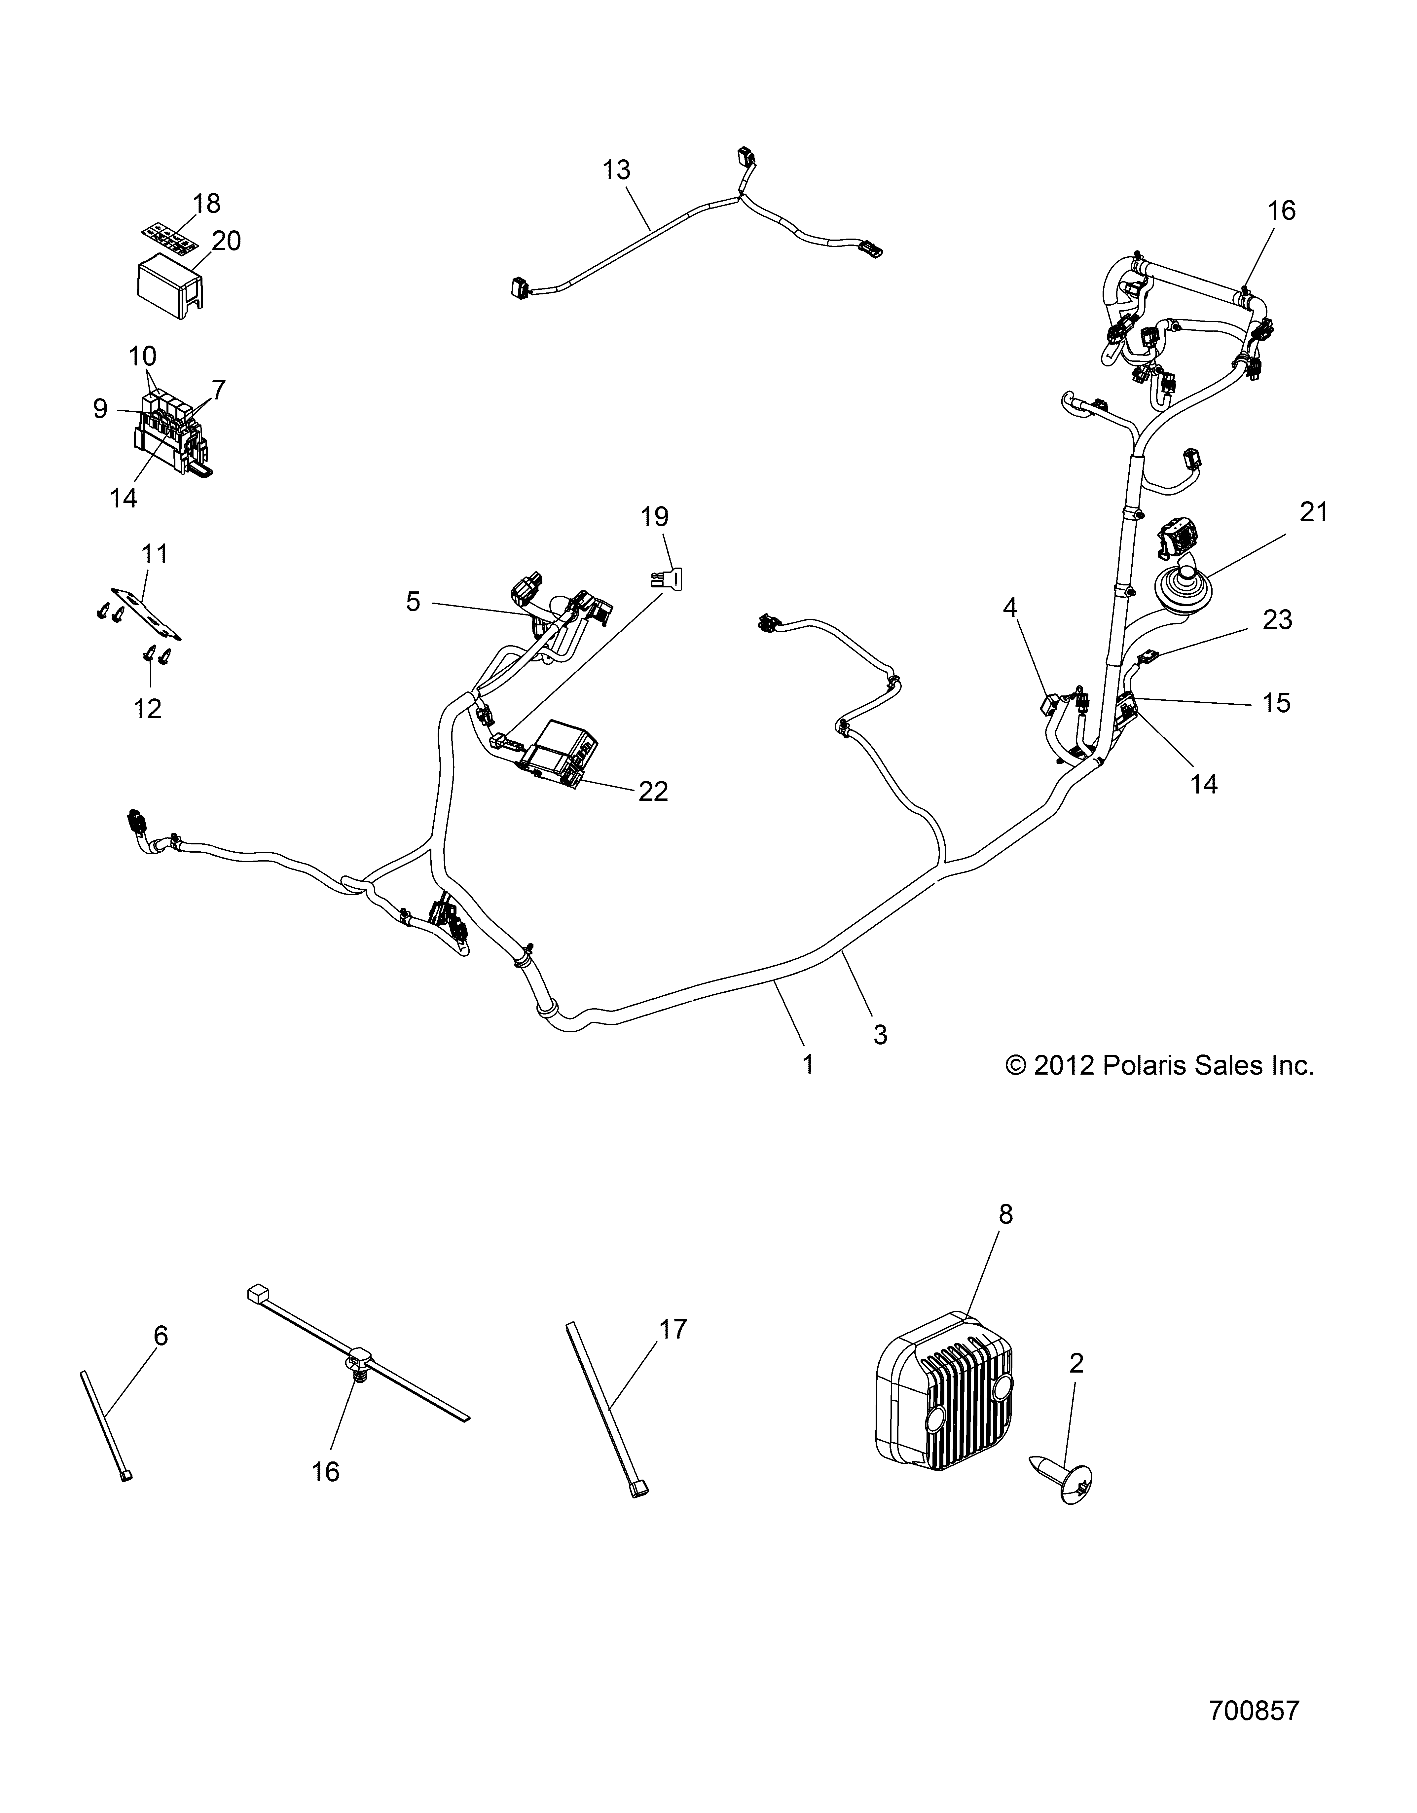 Foto diagrama Polaris que contem a peça 2878501